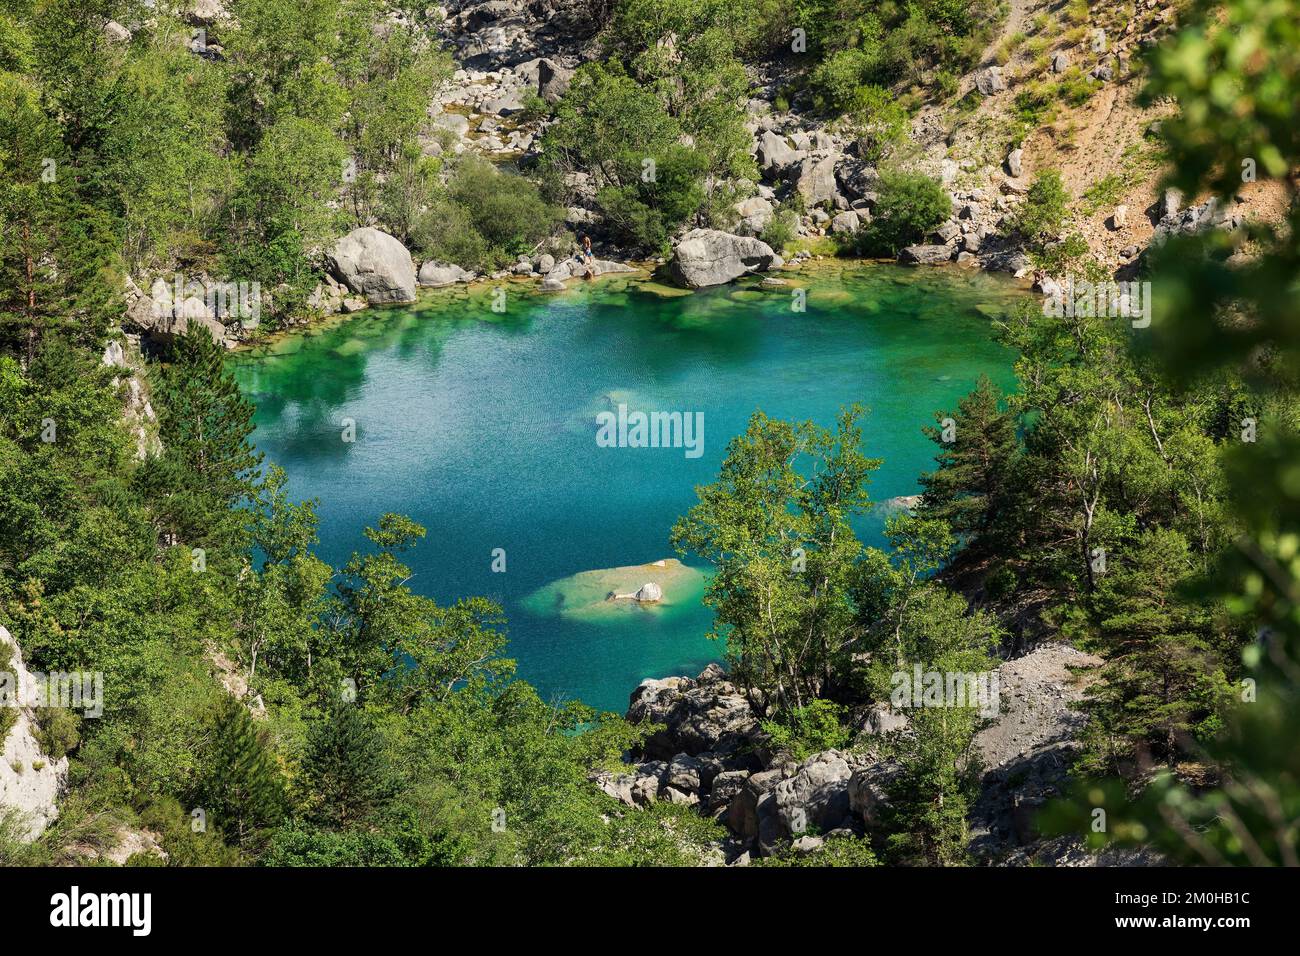 France, Alpes de Haute Provence, regional natural park of Verdon, Castellane, Le Verdon river at the entrance of the lake of Chaudanne Stock Photo